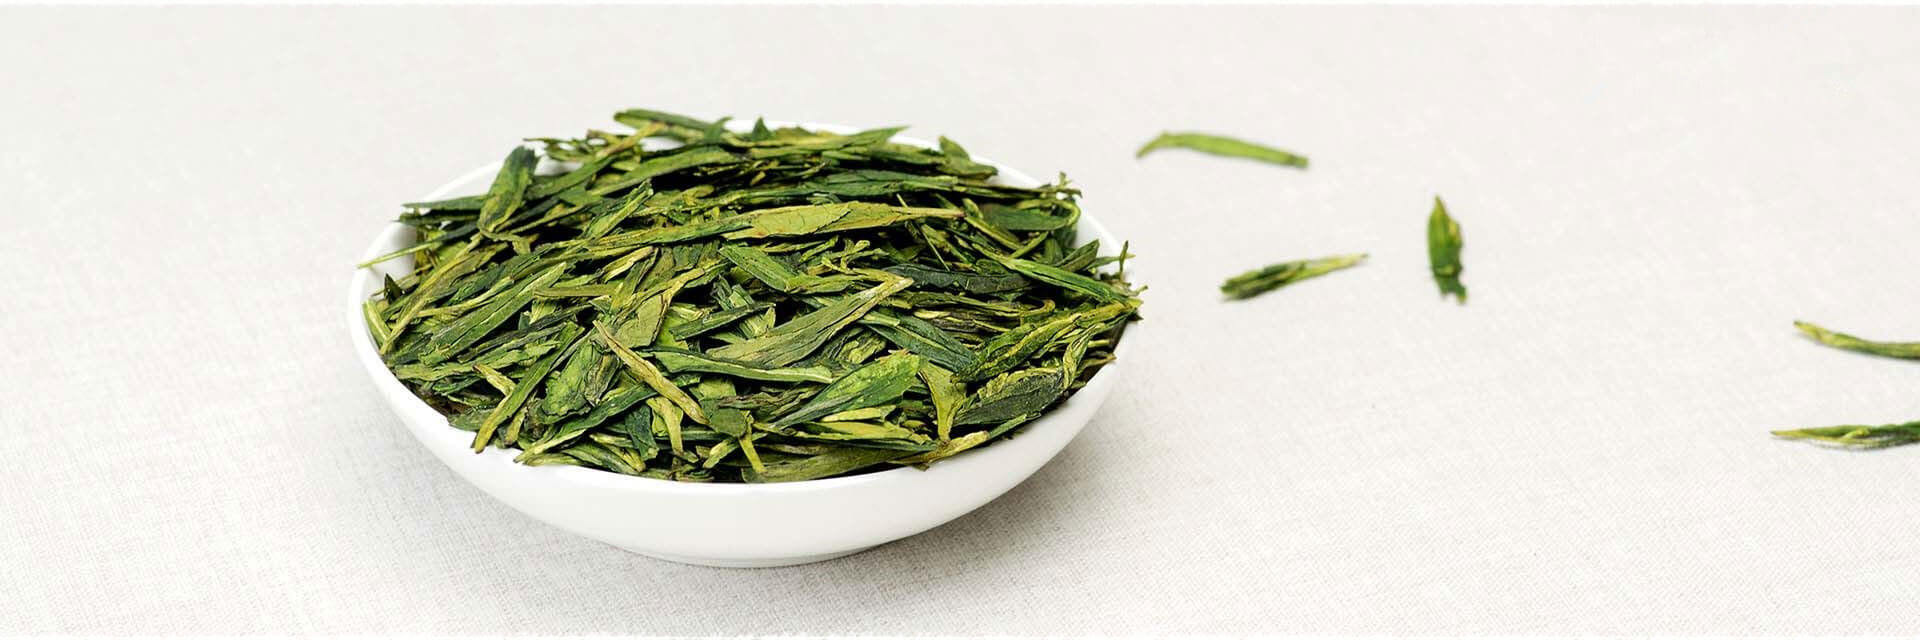 Dos de cabillaud poché au thé, crème au thé vert LongJing : recette basses calories.